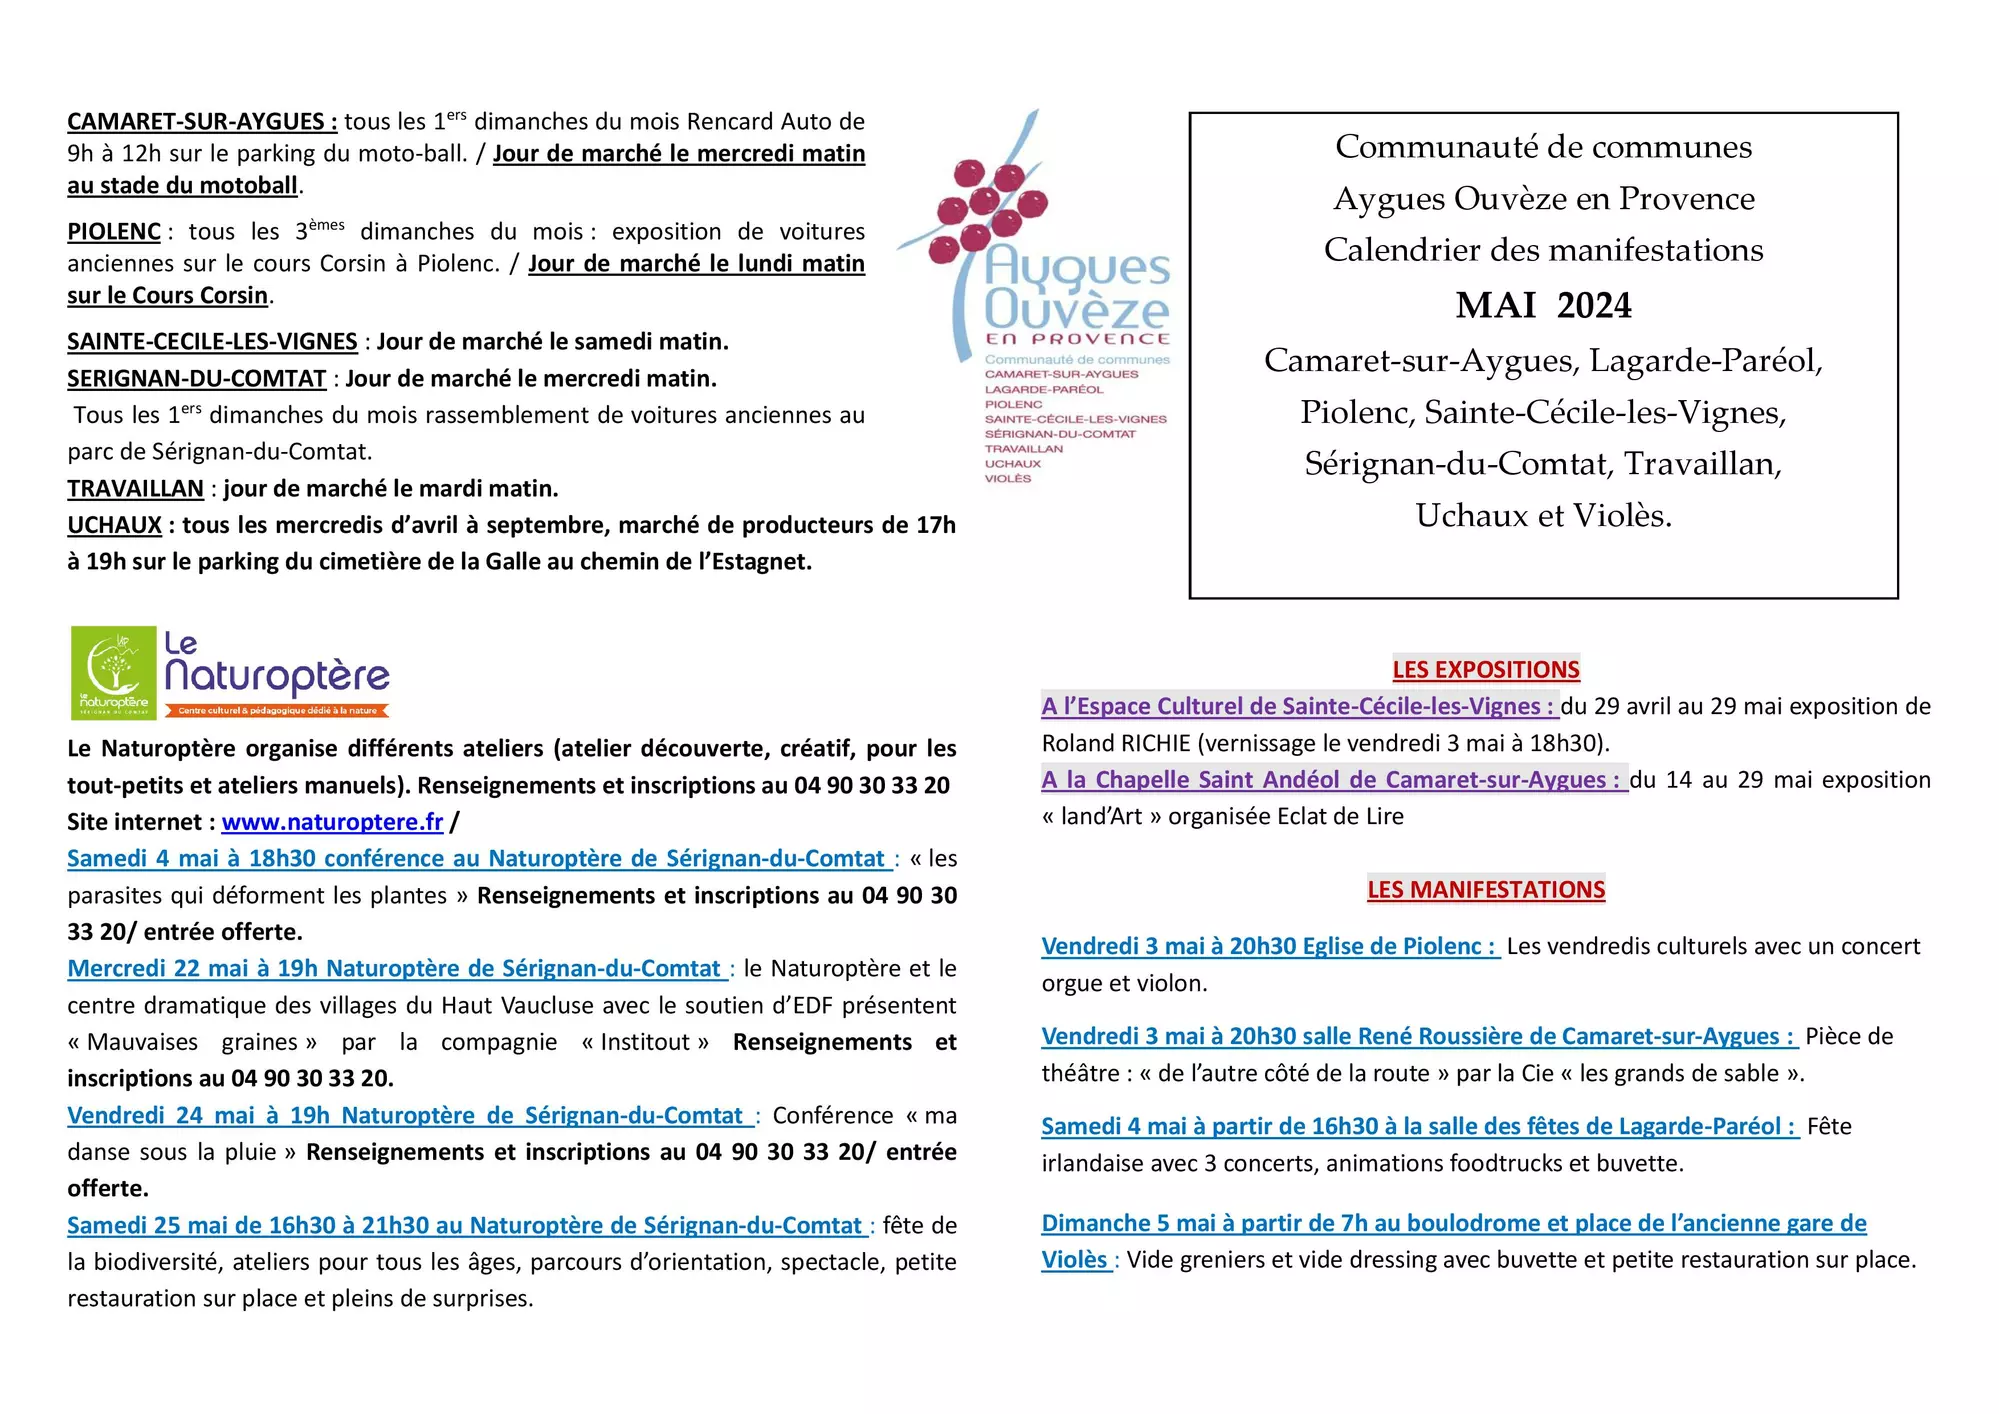 Agenda des manifestations du mois de mai sur la Communauté de communes Aygues Ouvèze en Provence